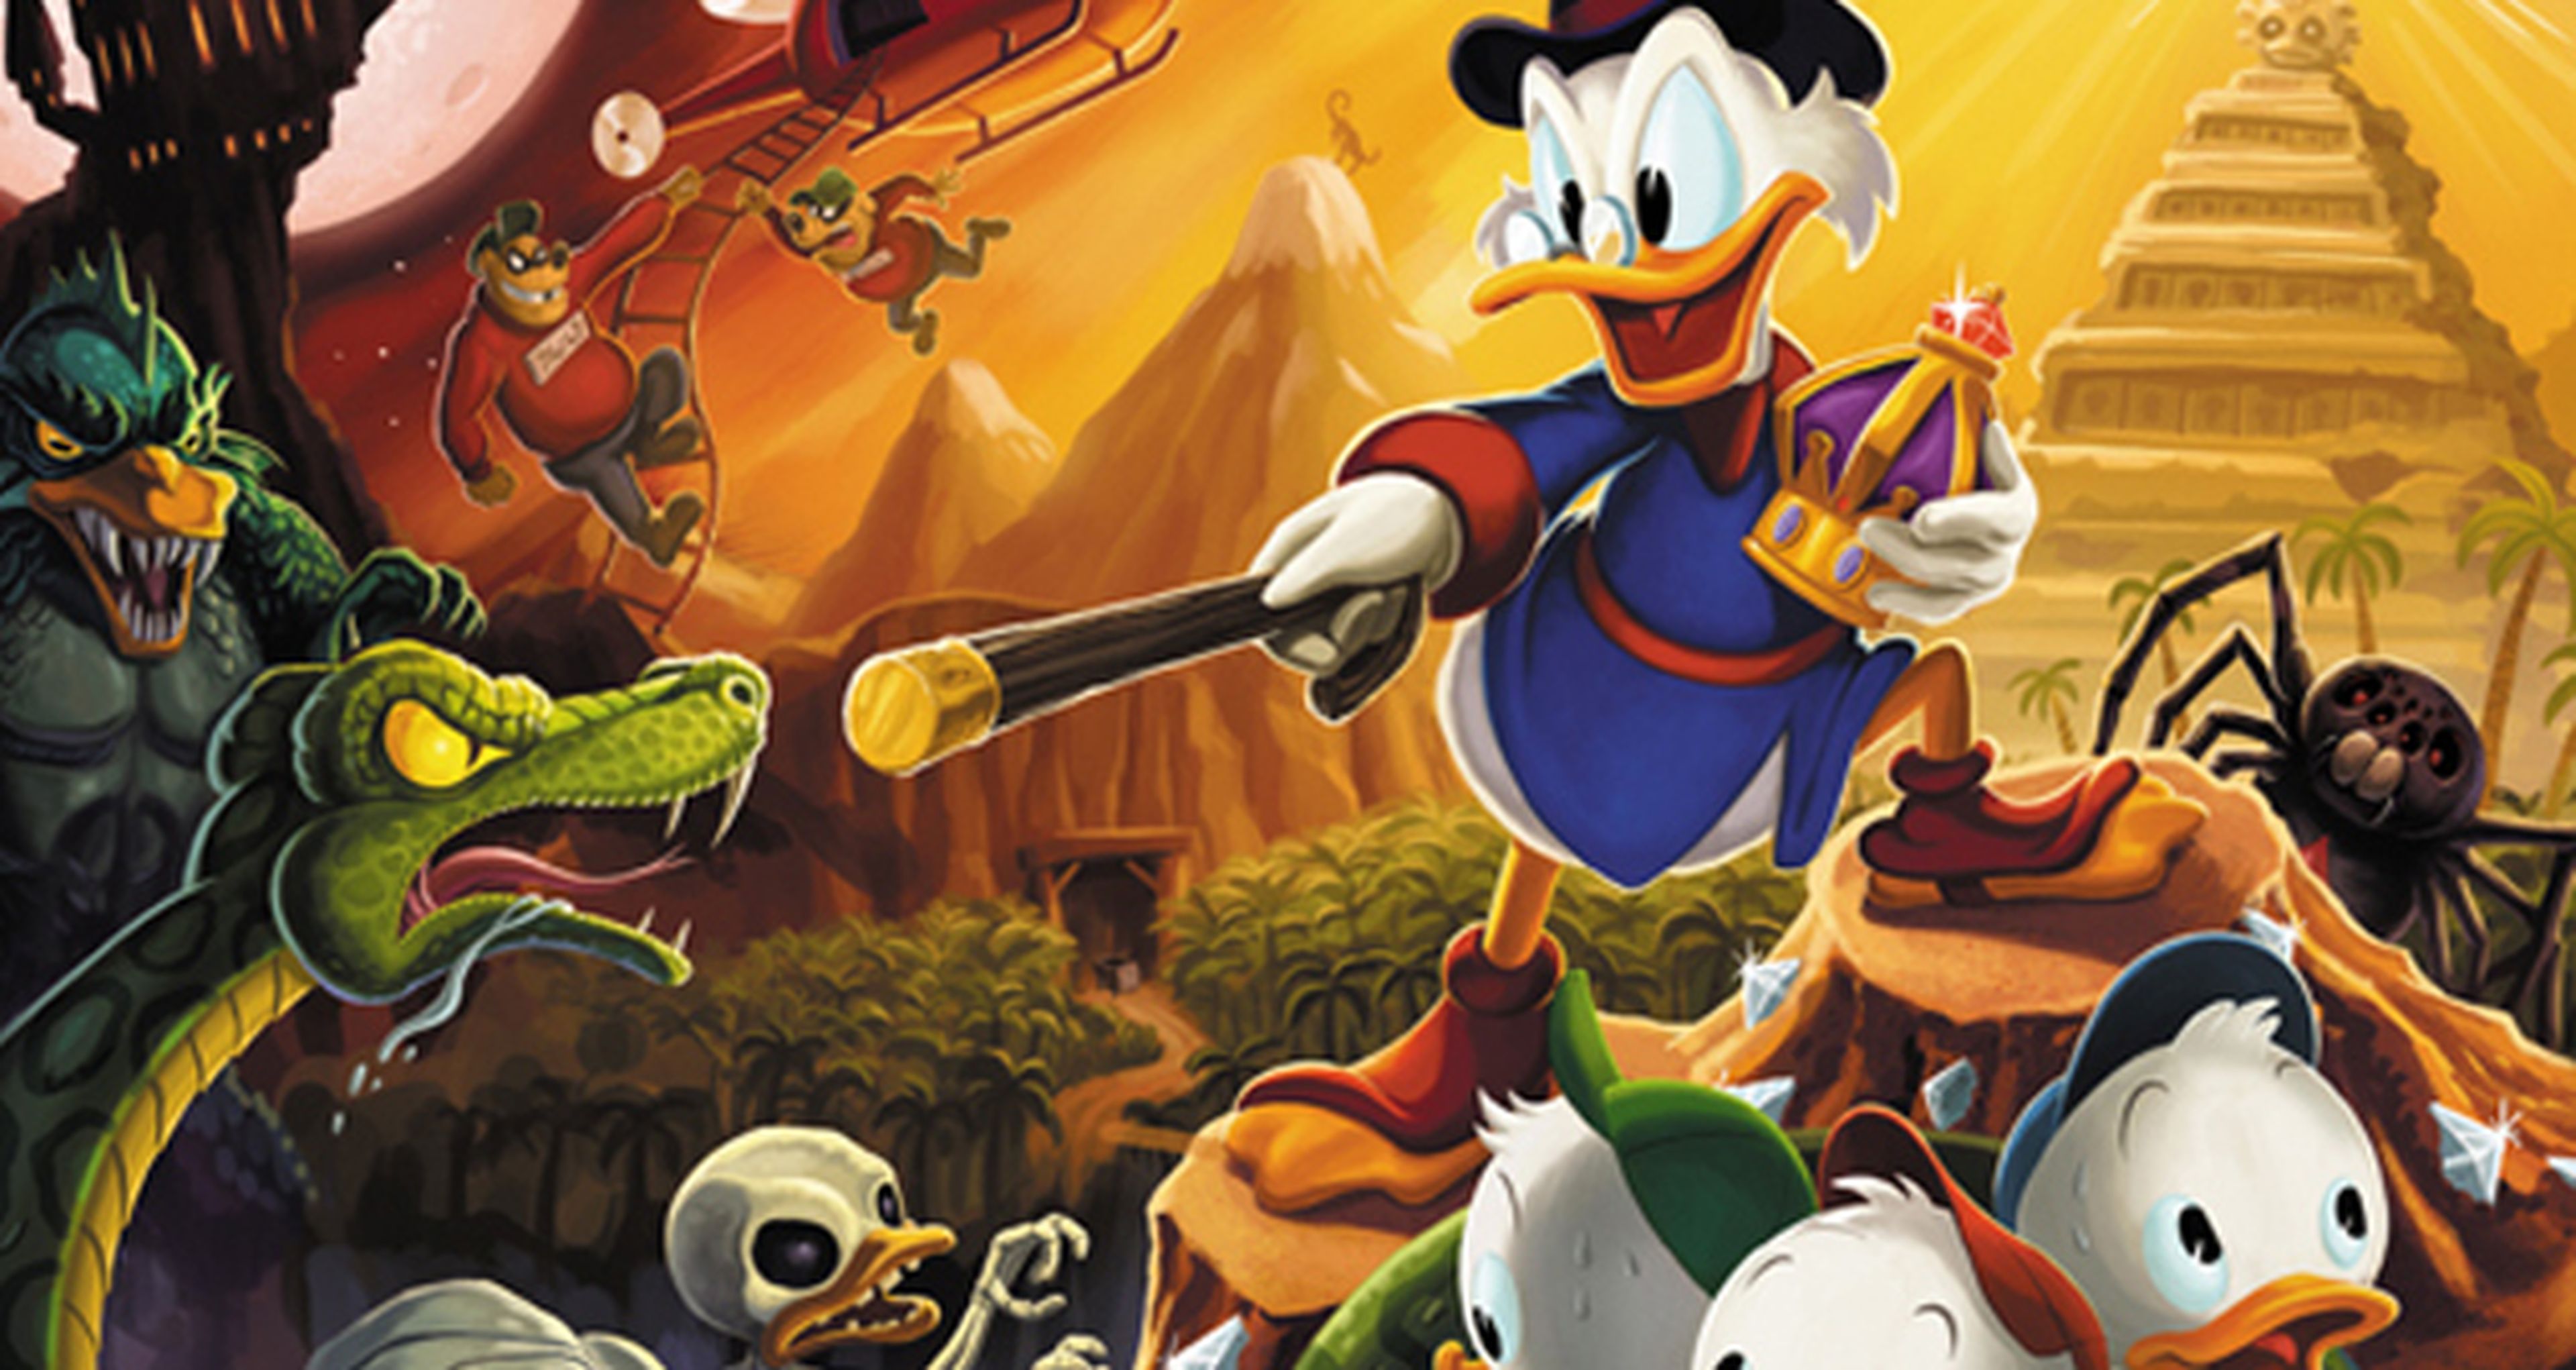 Duck Game, Fortnite y más: cinco juegos online para disfrutar con